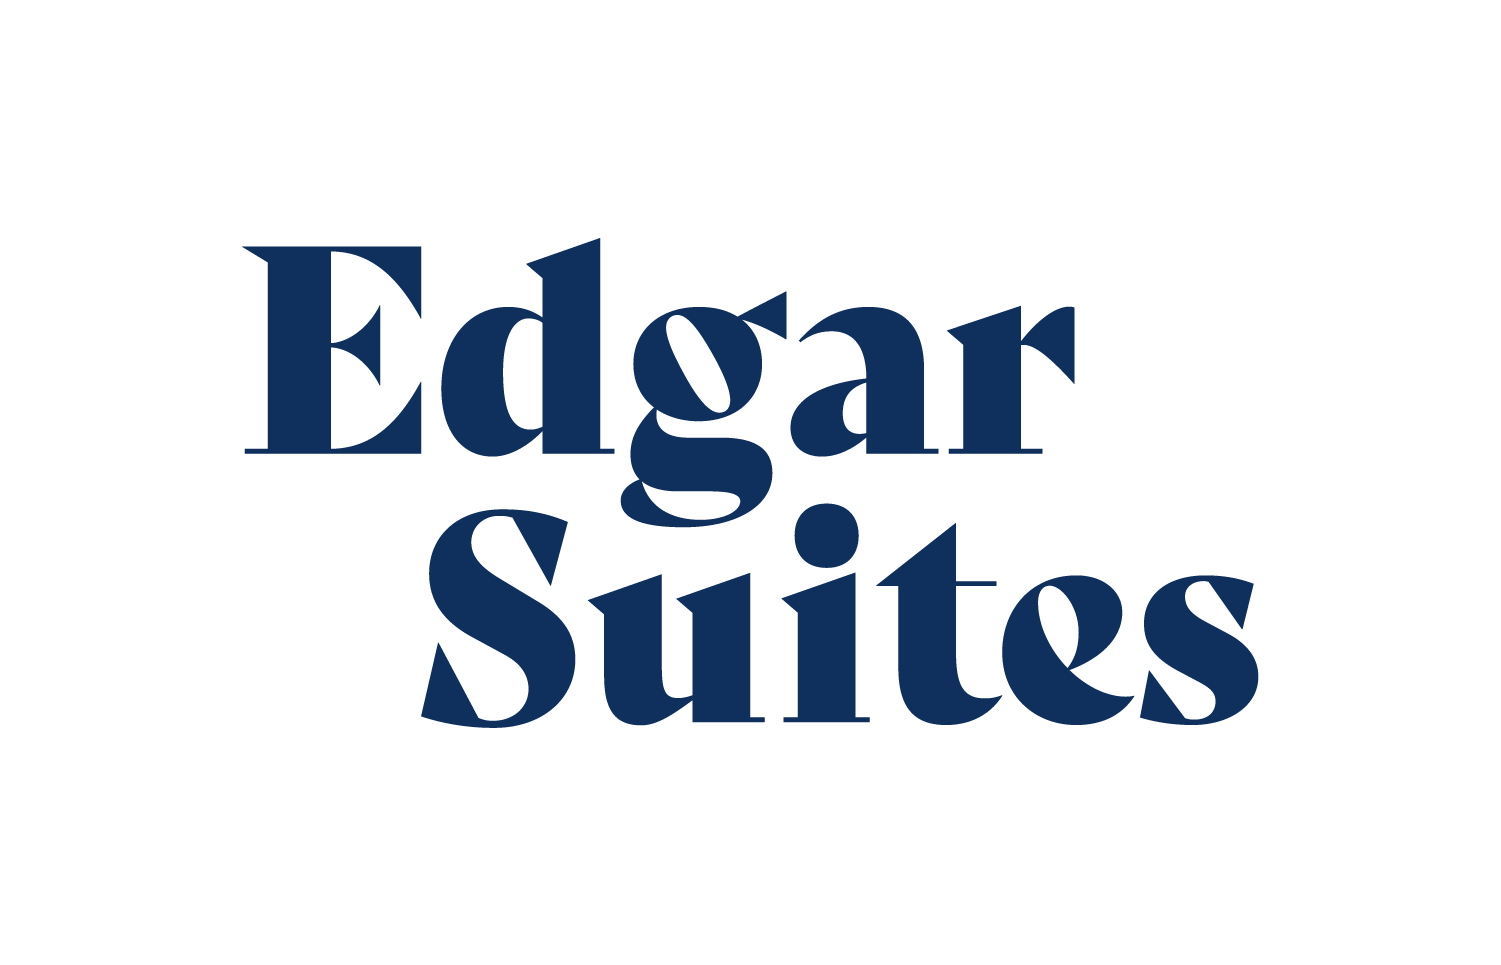 Edgar Suites